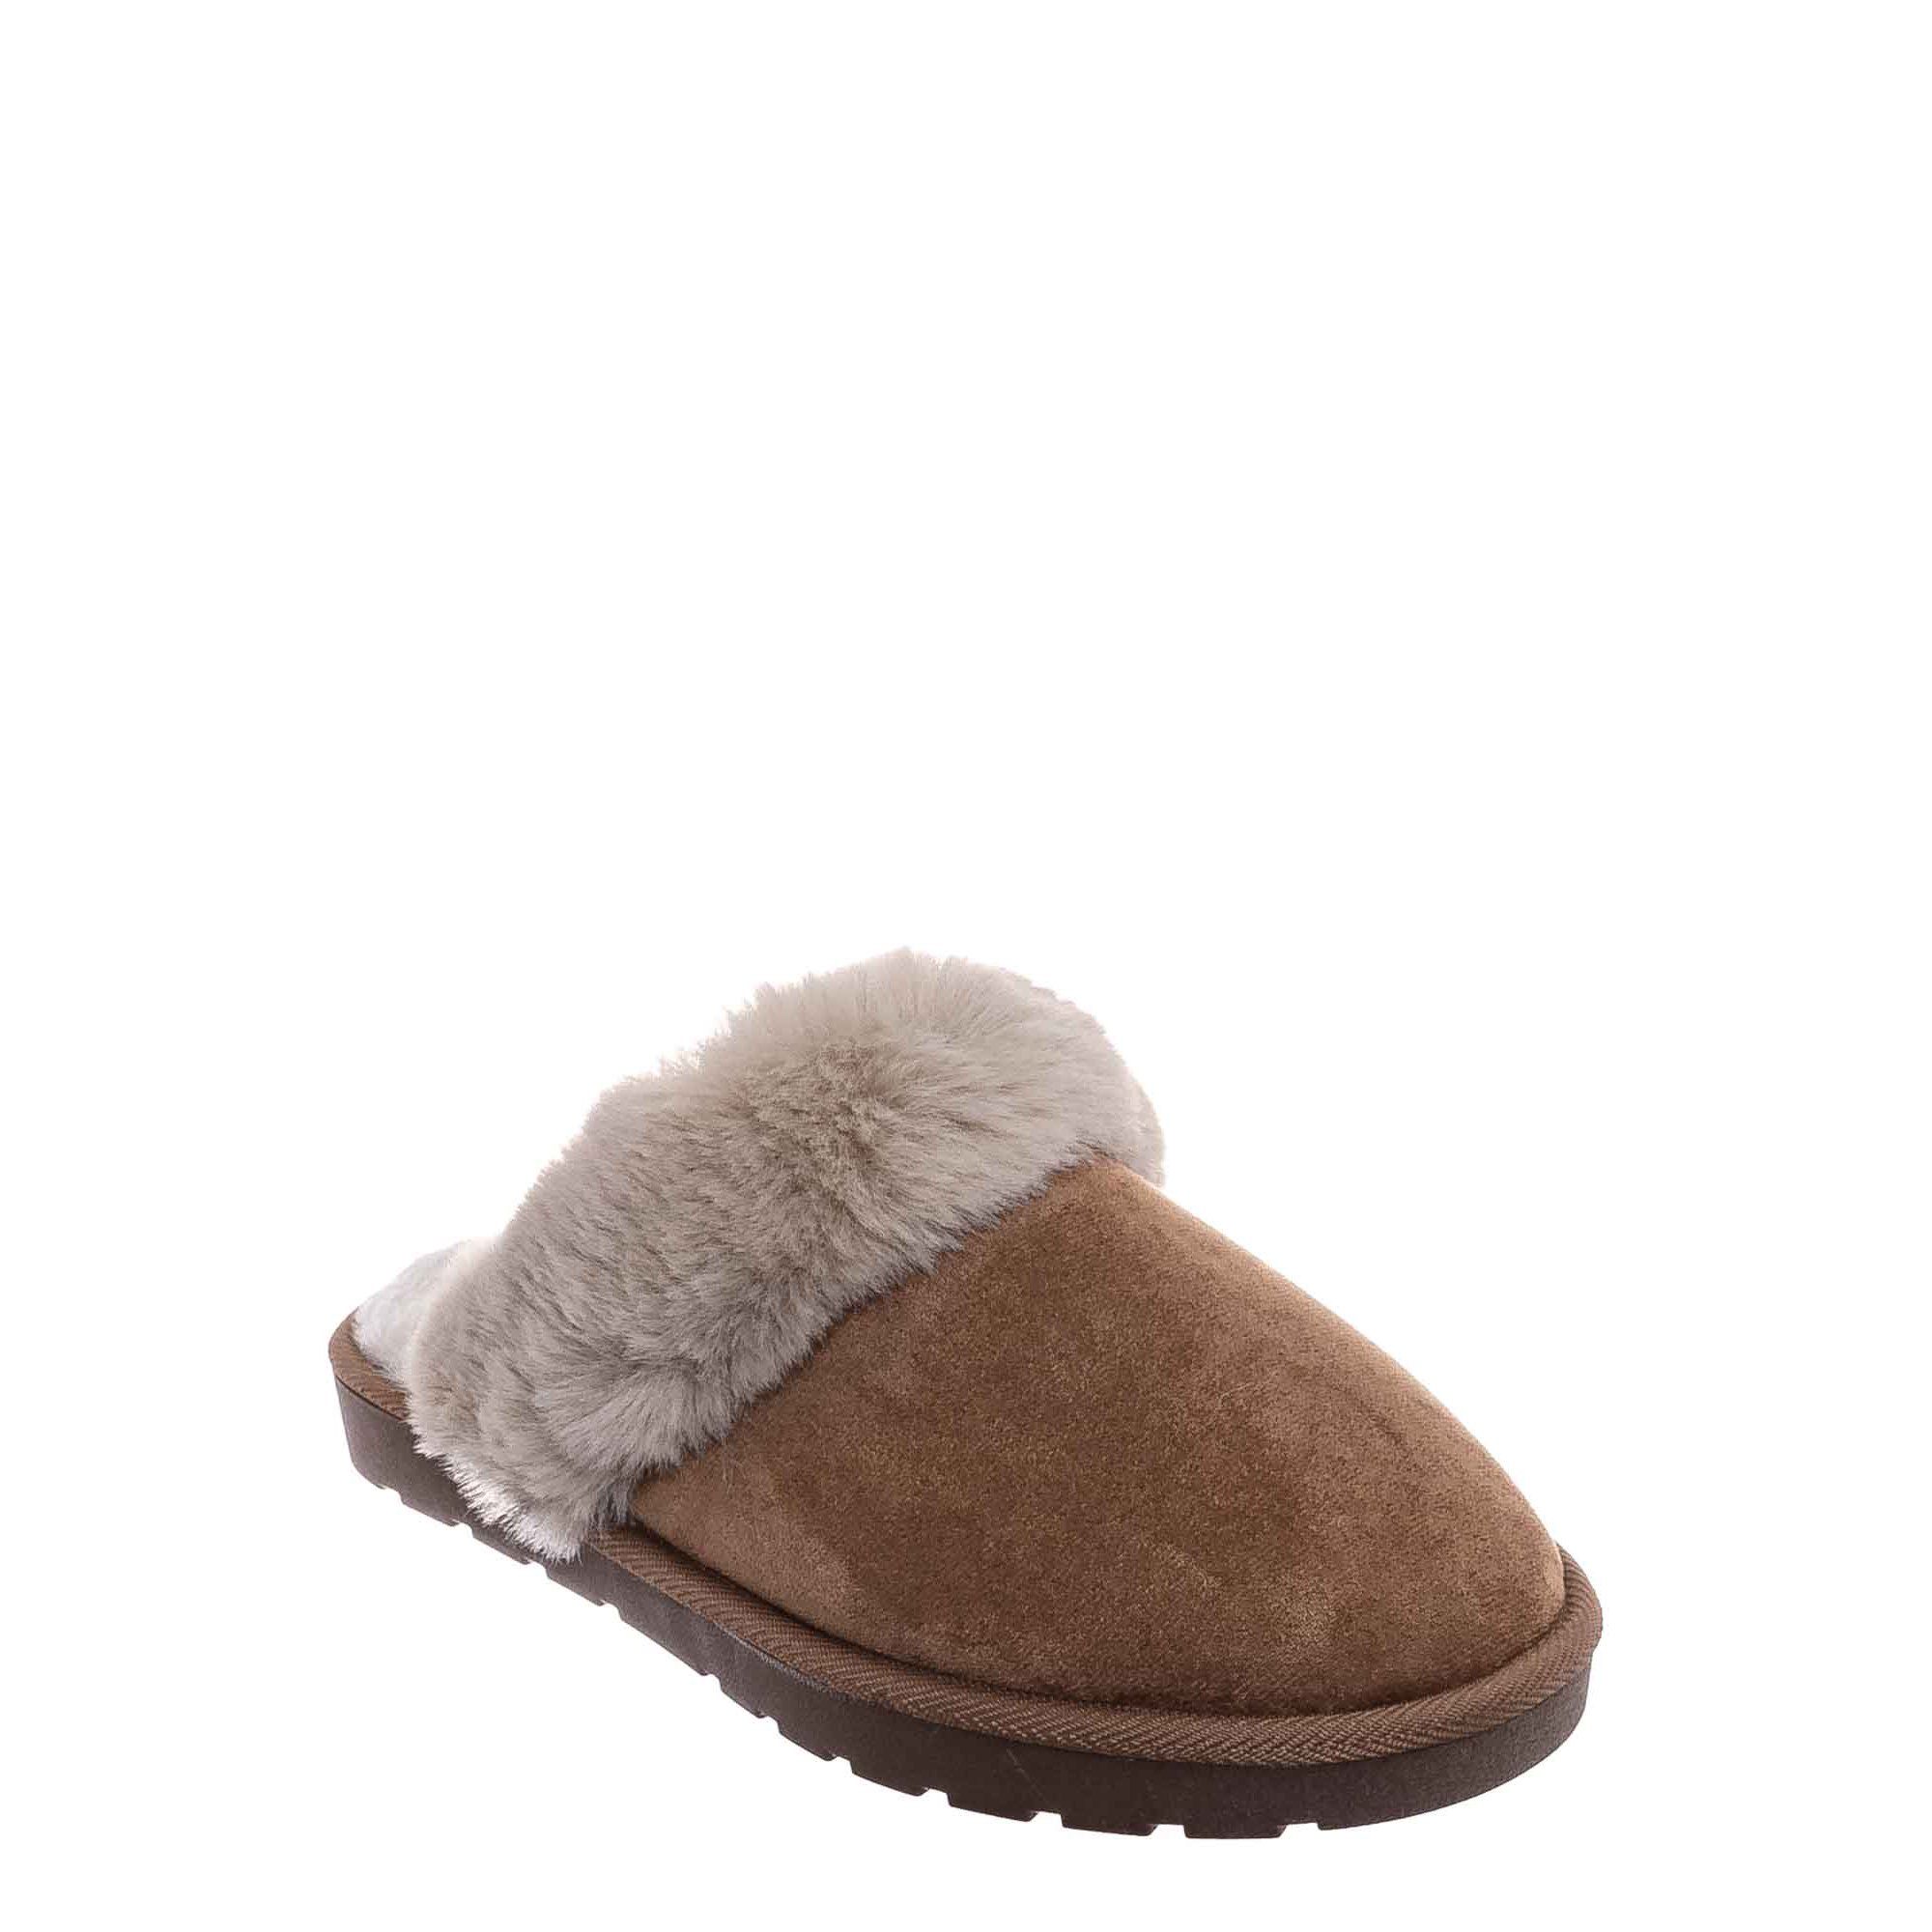 Winter Cozy House Slipper - Vegan Friendly Faux Fur Slip On Mule | Walmart (US)